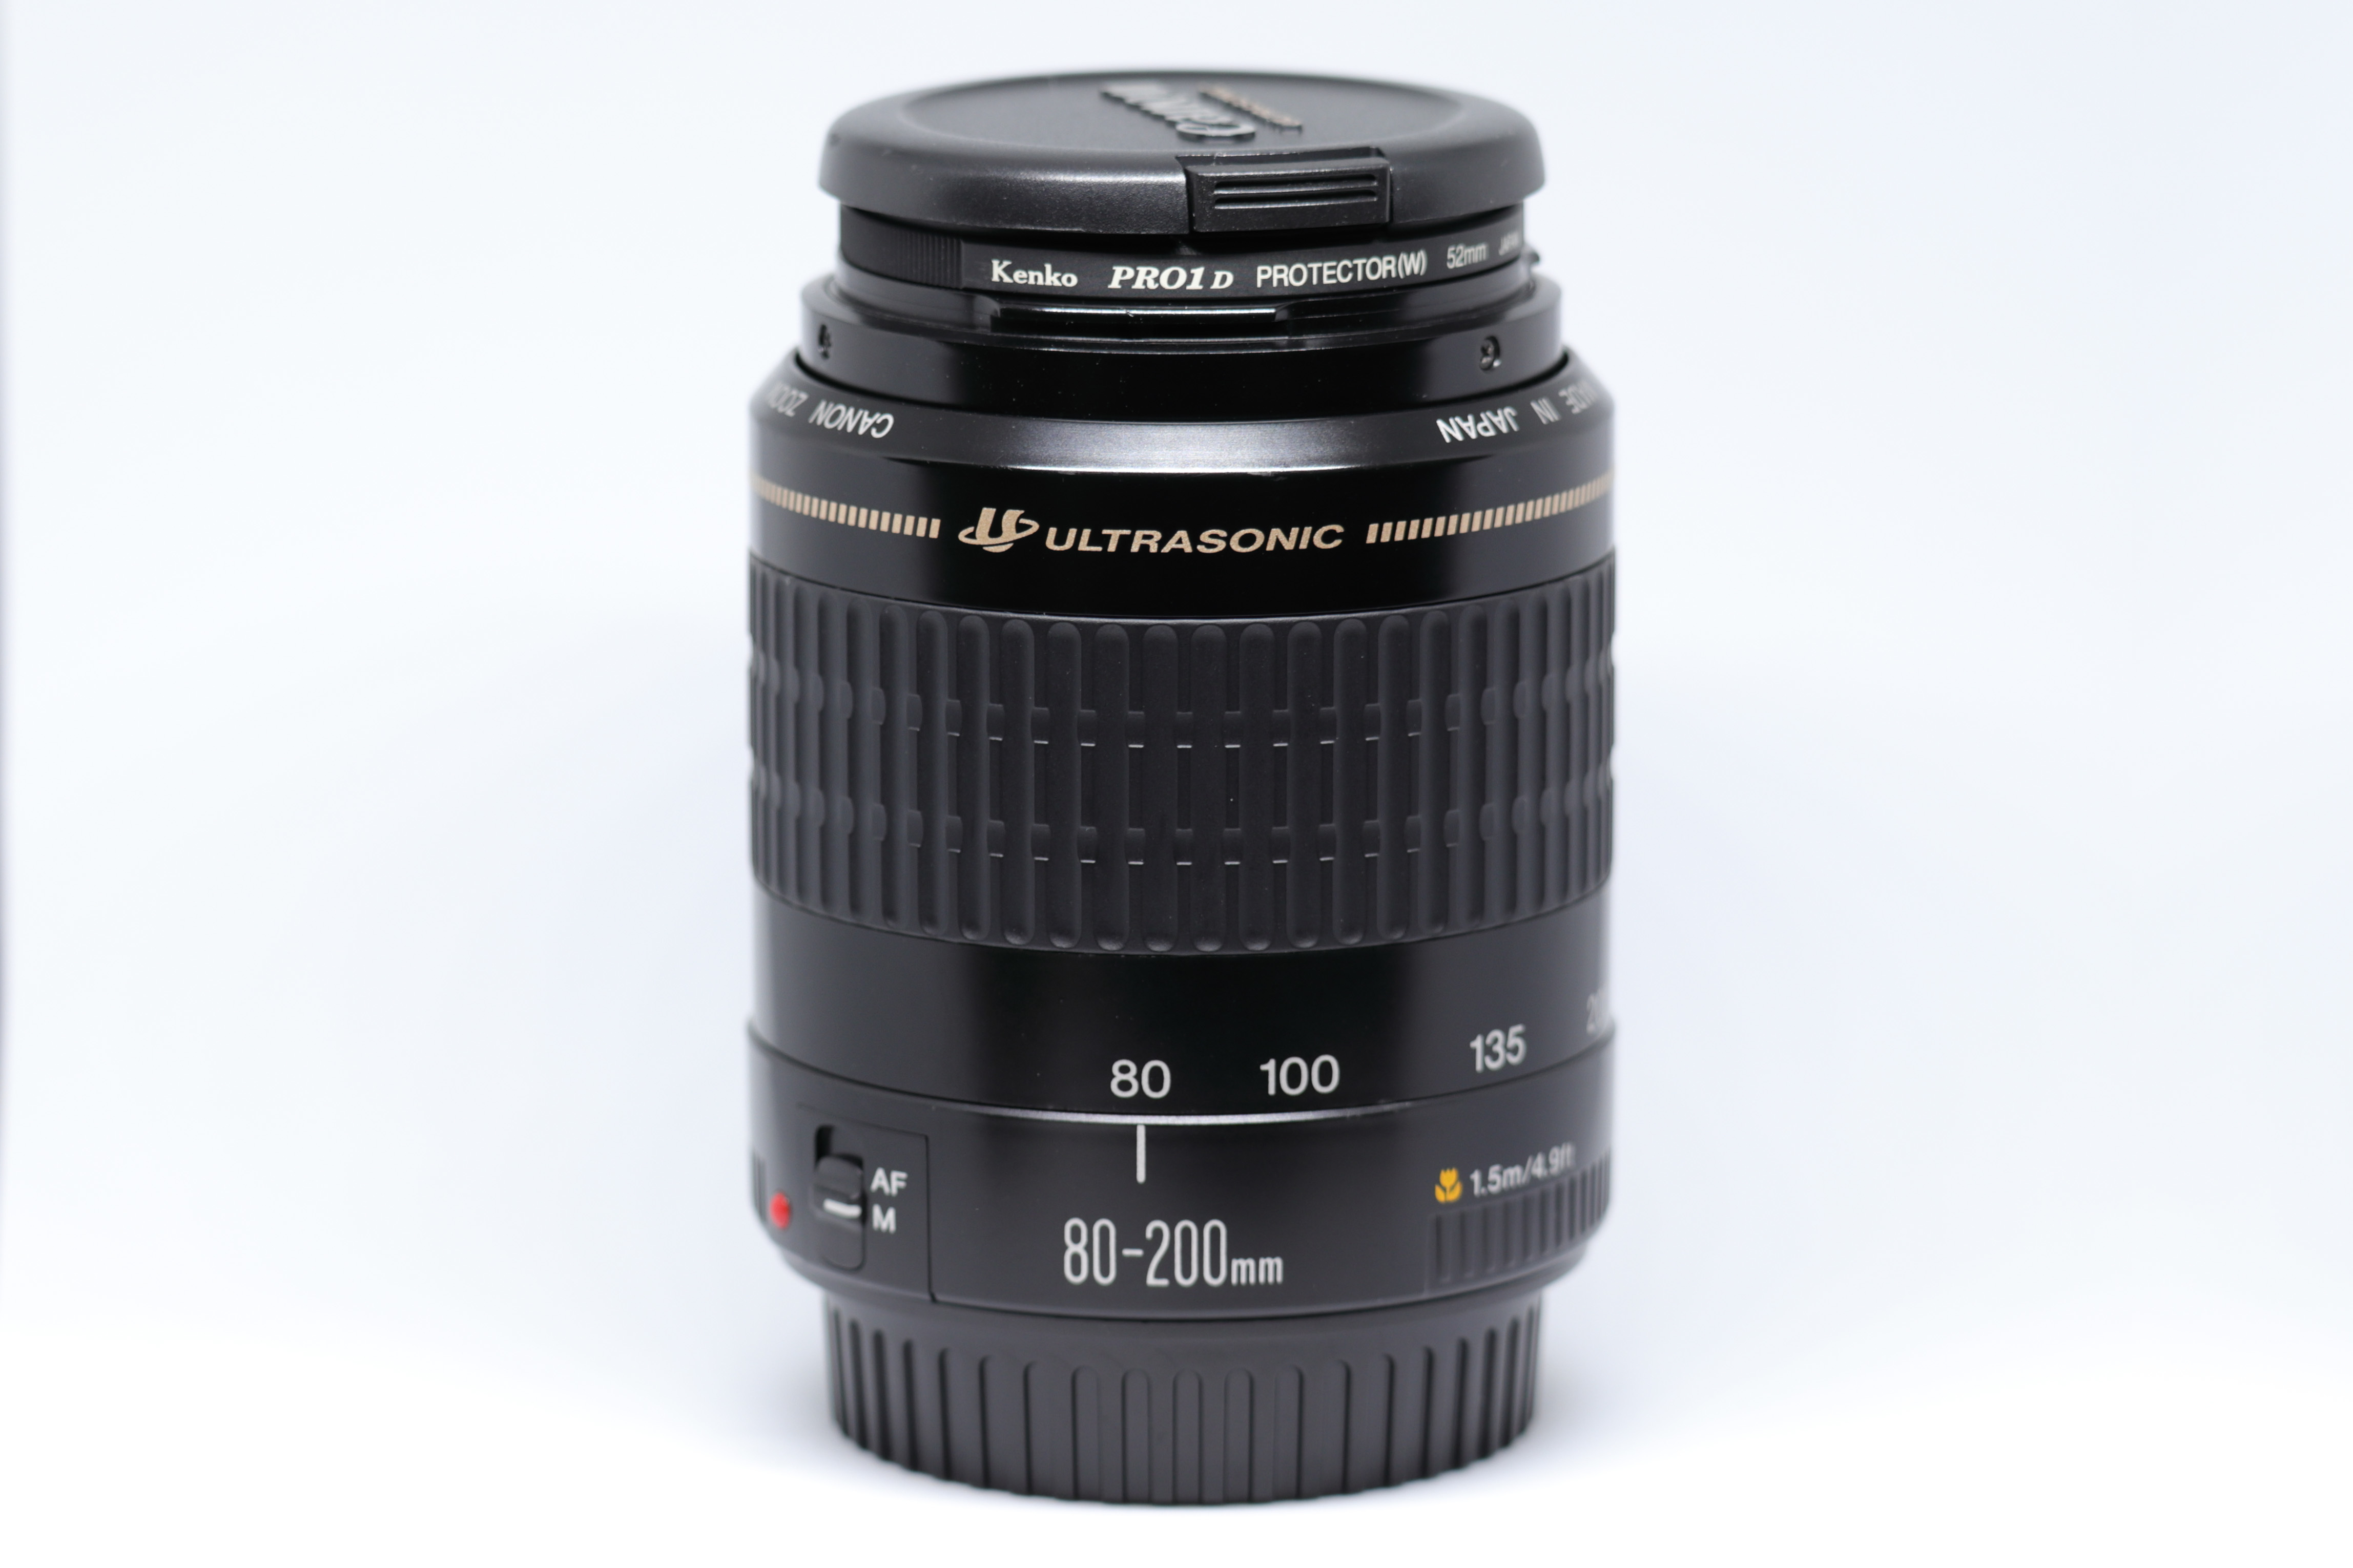 Canon 5D mark iii + EF 80-200mm F4.5-5.6